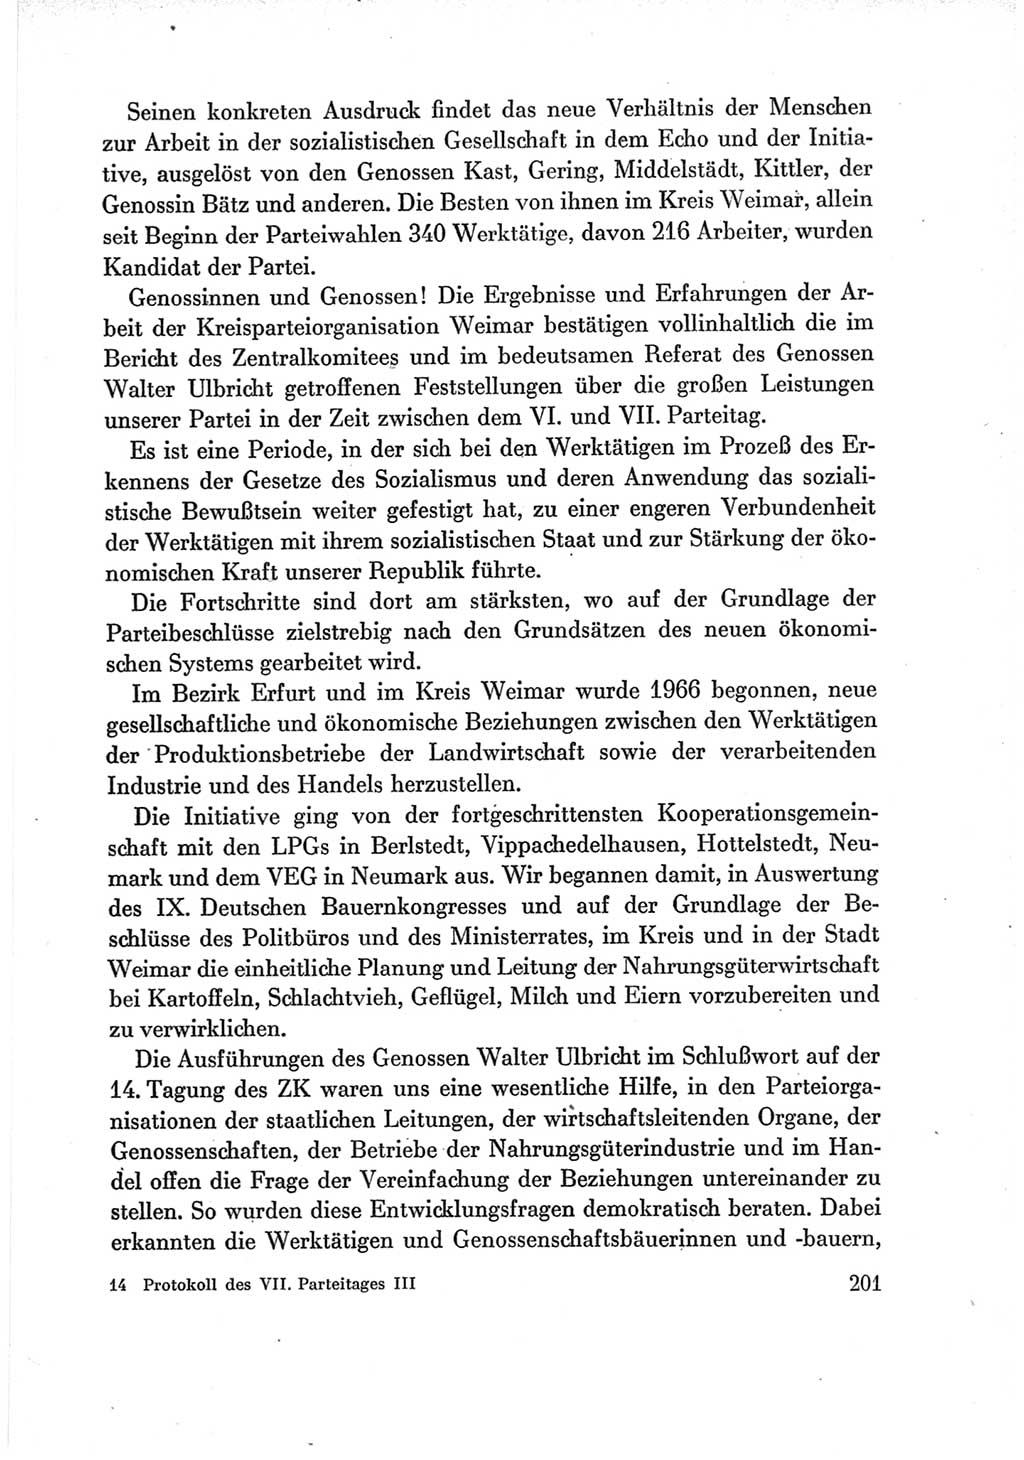 Protokoll der Verhandlungen des Ⅶ. Parteitages der Sozialistischen Einheitspartei Deutschlands (SED) [Deutsche Demokratische Republik (DDR)] 1967, Band Ⅲ, Seite 201 (Prot. Verh. Ⅶ. PT SED DDR 1967, Bd. Ⅲ, S. 201)